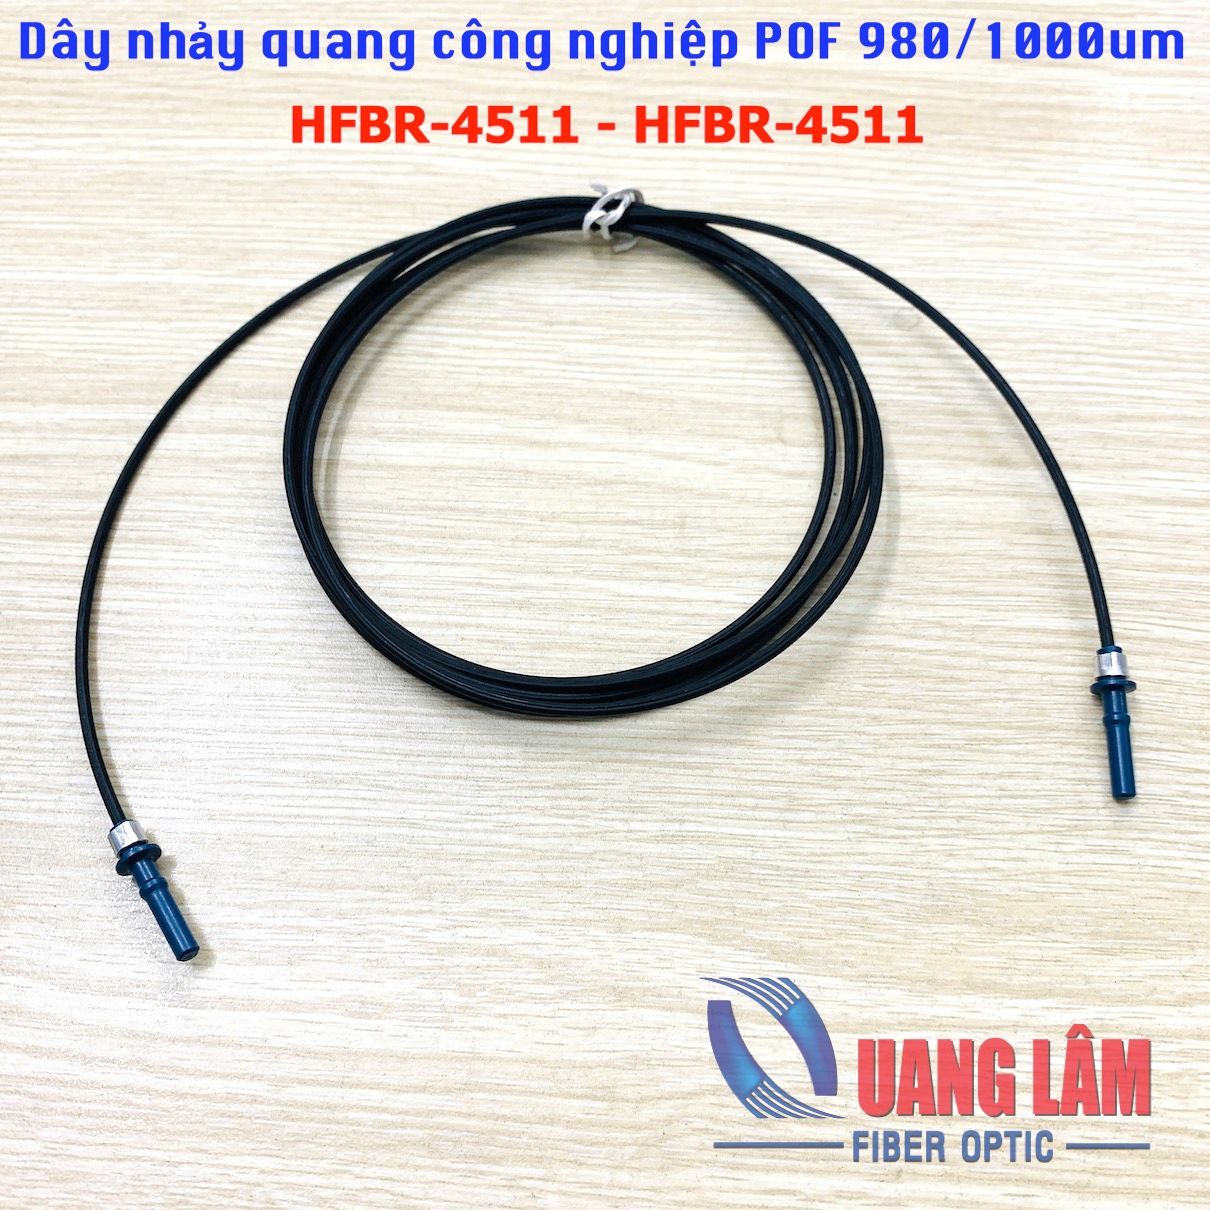 Dây Nhảy Quang Công Nghiệp POF 980/1000um HFBR-4511--HFBR-4511, Simplex - Chiều dài theo yêu cầu